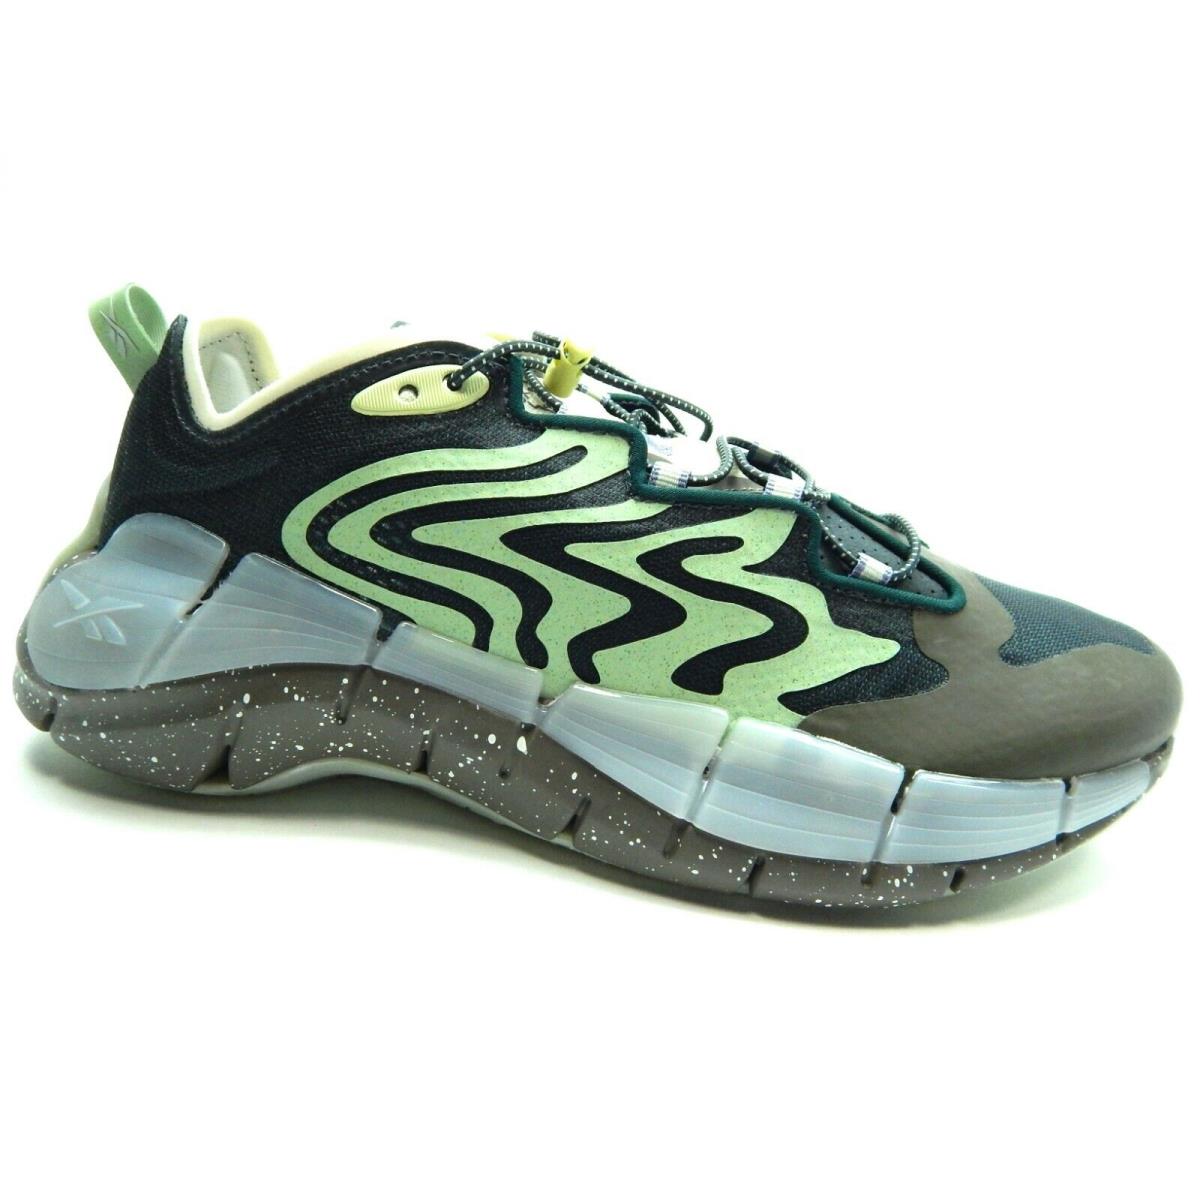 Reebok Zig Kinetica II Green Grey Men Shoes S23890